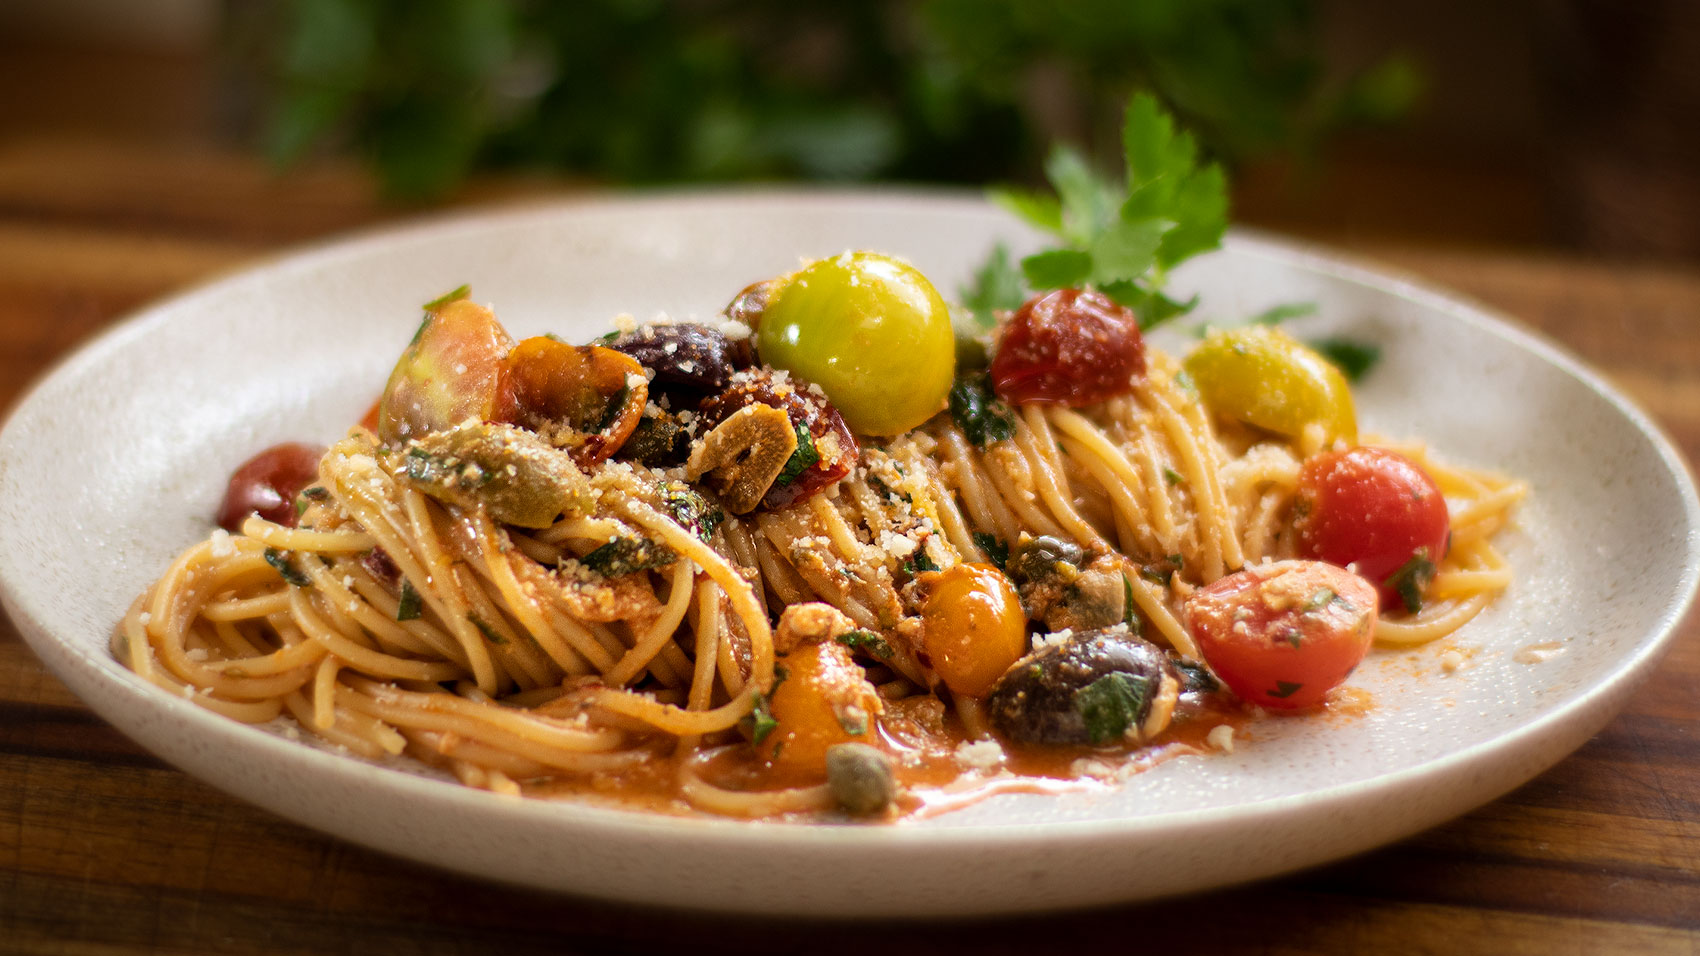 Spaghetti Siciliana - delicious Italian 25 minutes recipe